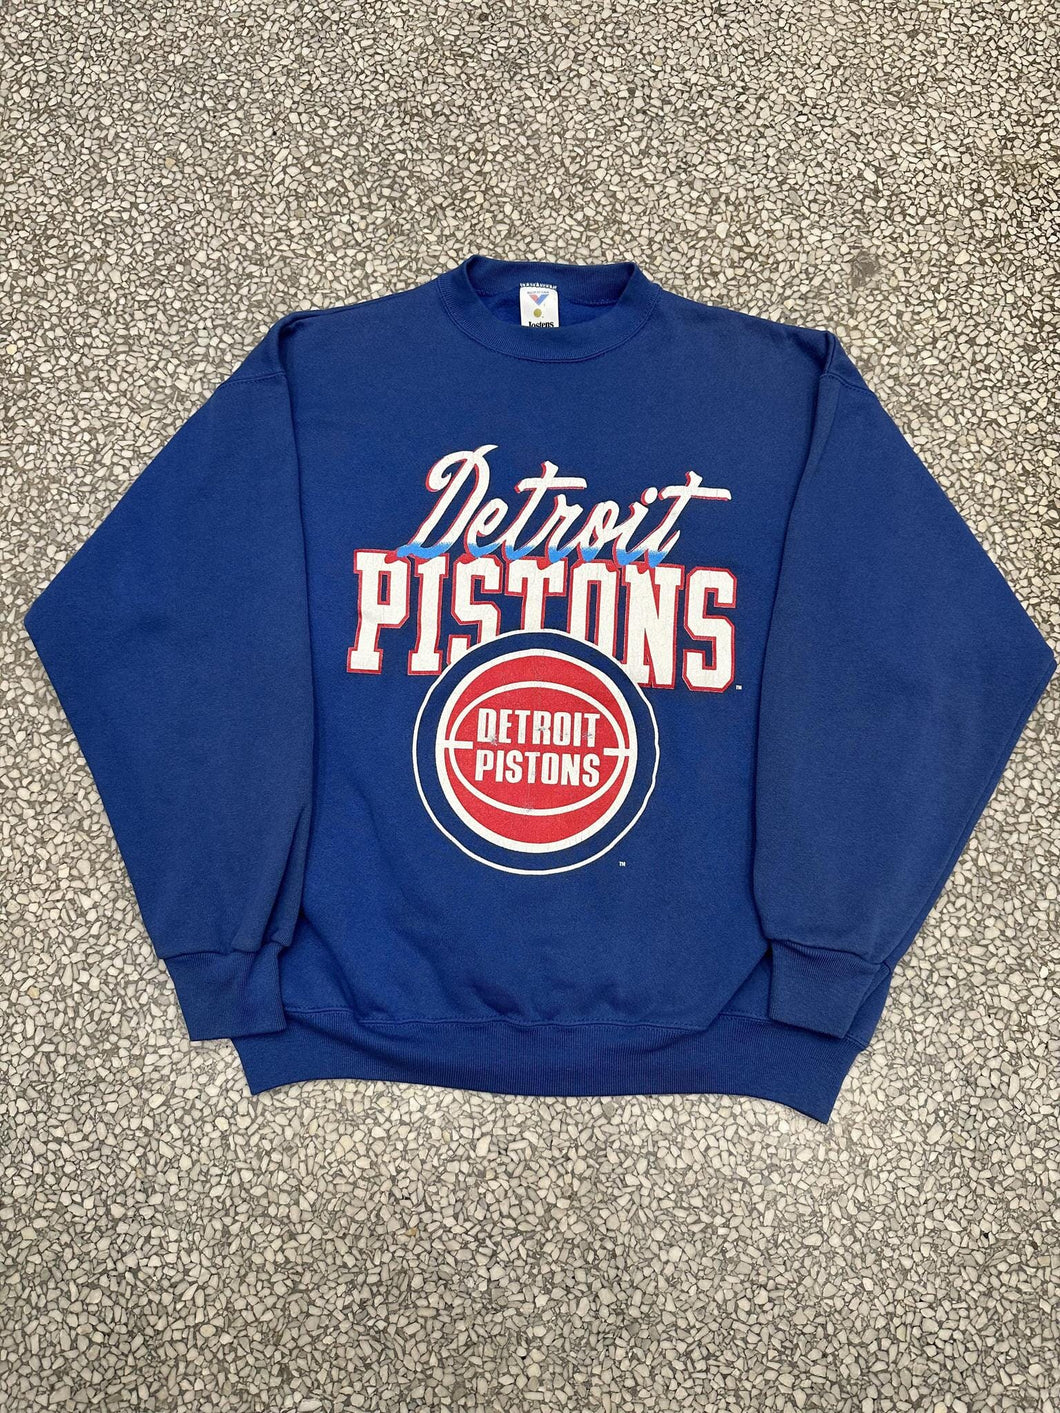 Detroit Pistons Vintage 90s Jostens Crewneck Faded Blue ABC Vintage 